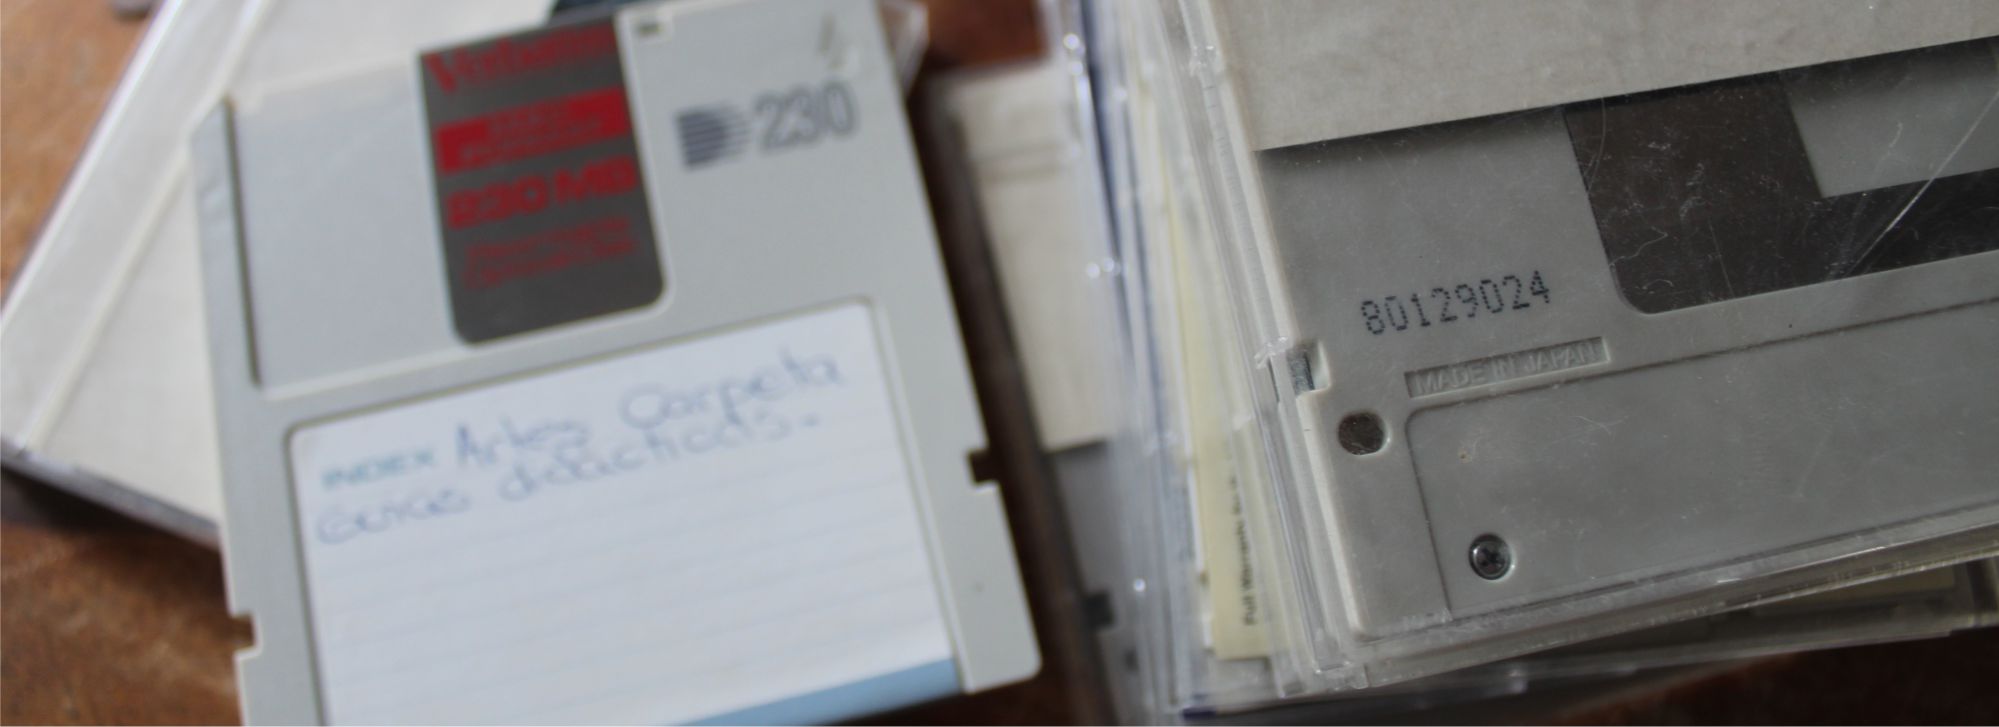 Los viejos disquetes